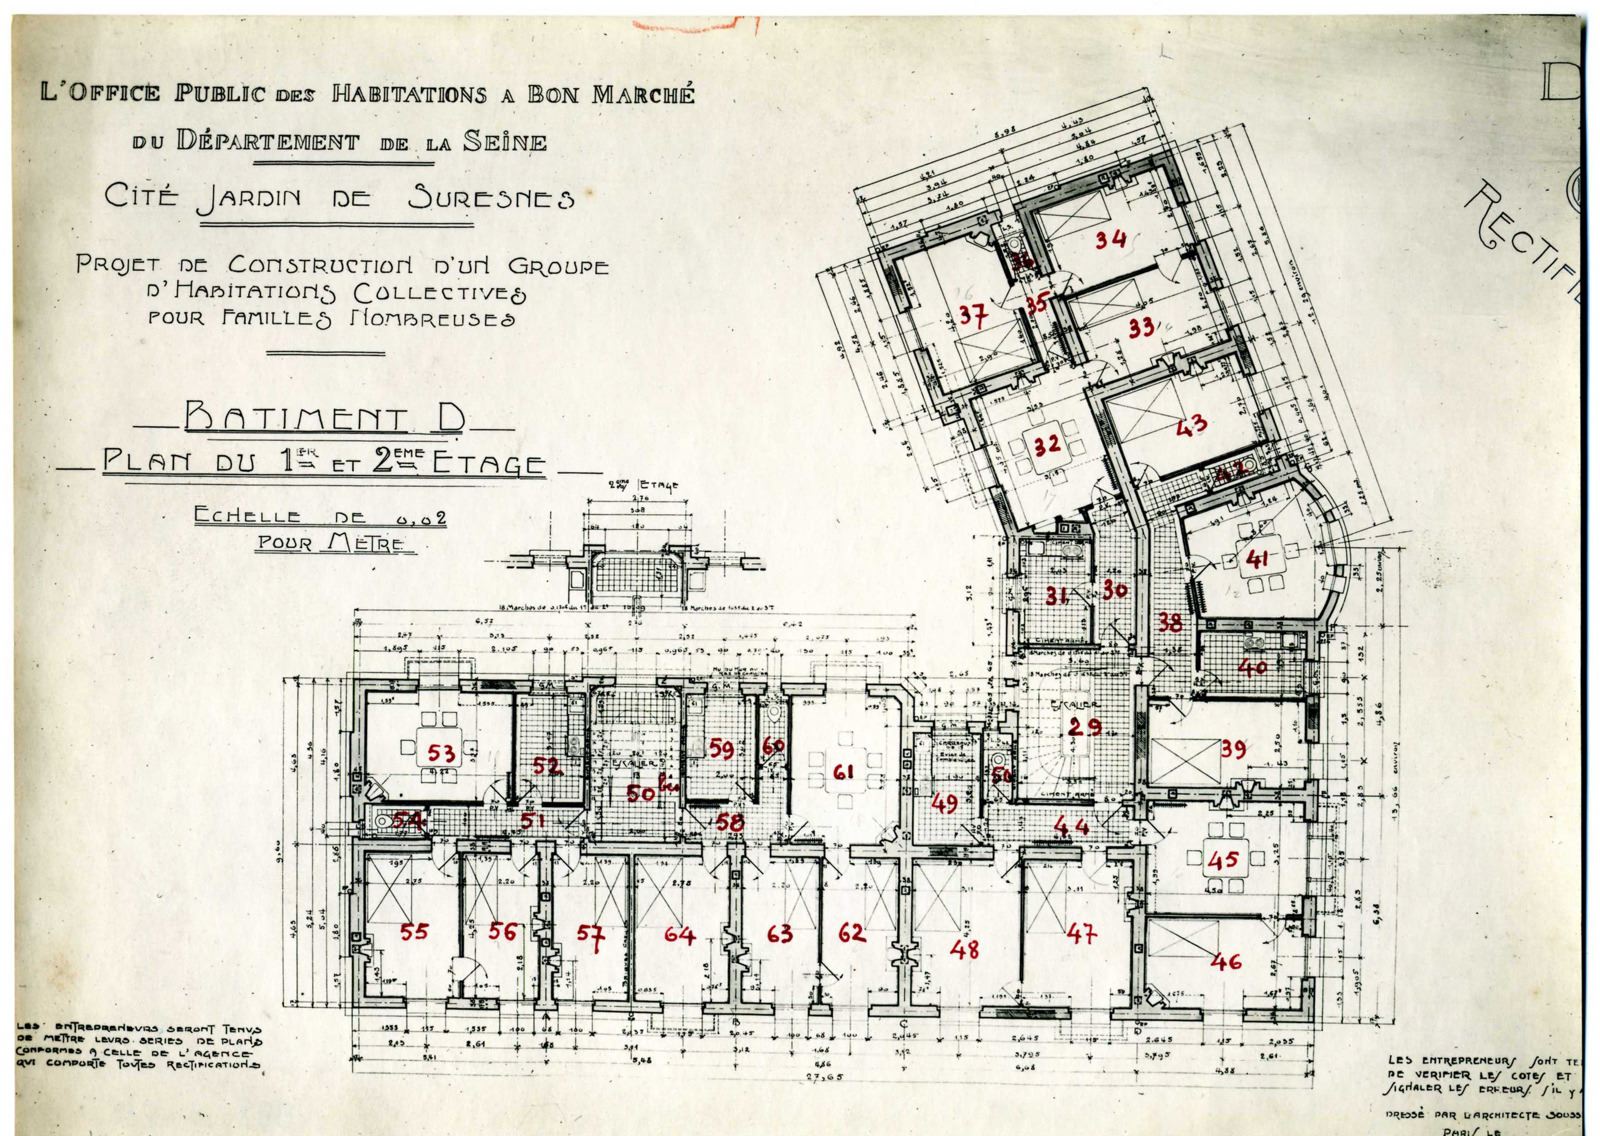 Plan du 1er et 2ème étage du bâtiment D, Cité-jardins, habitations collectives pour familles nombreuses.